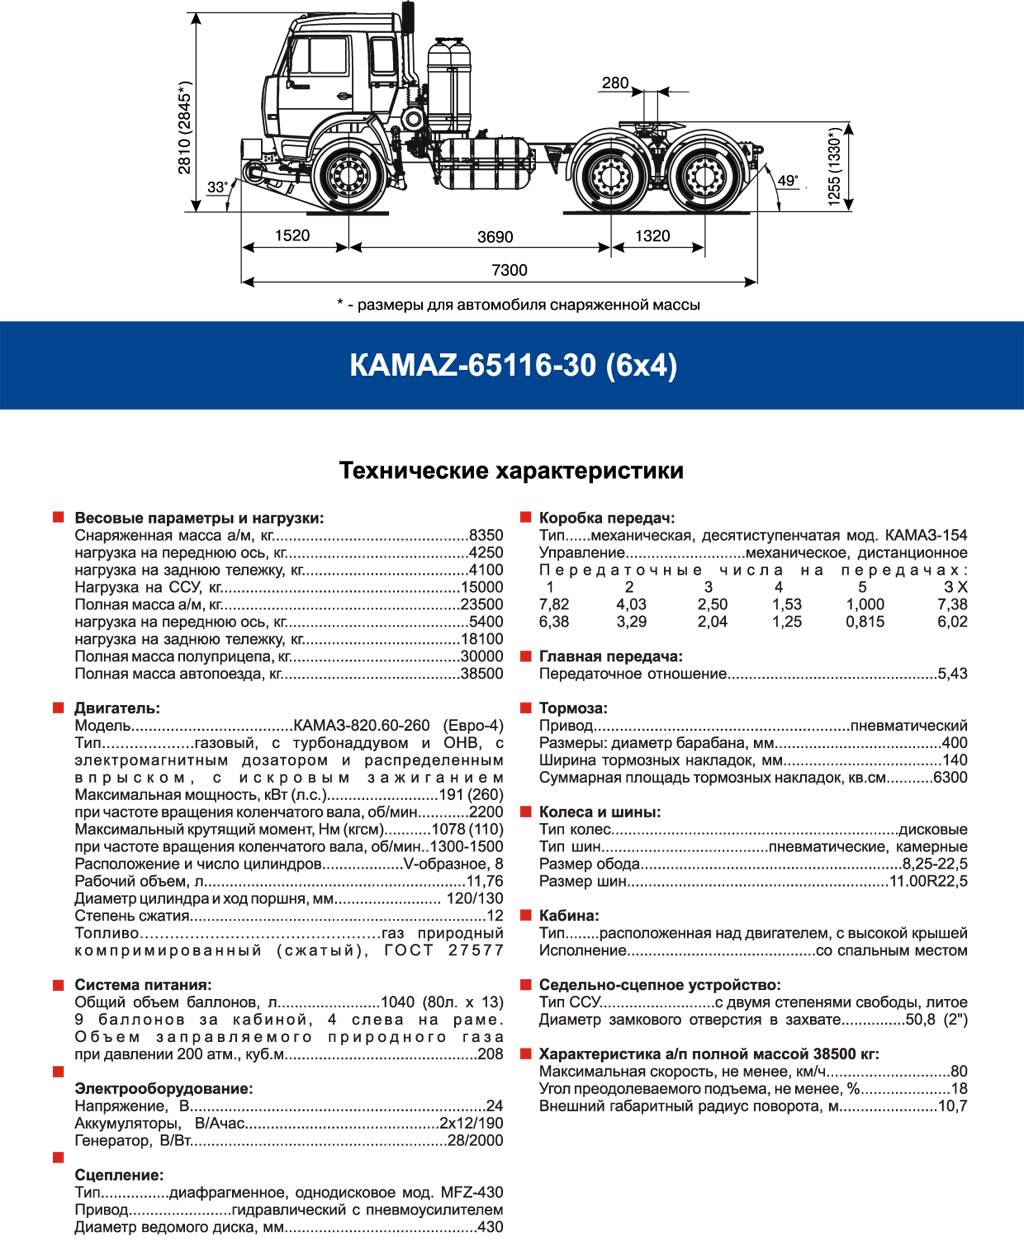 Камаз-65221: 6020-43, технические характеристики, вездеход седельный тягач свыше 400 л.с, отзывы, цена